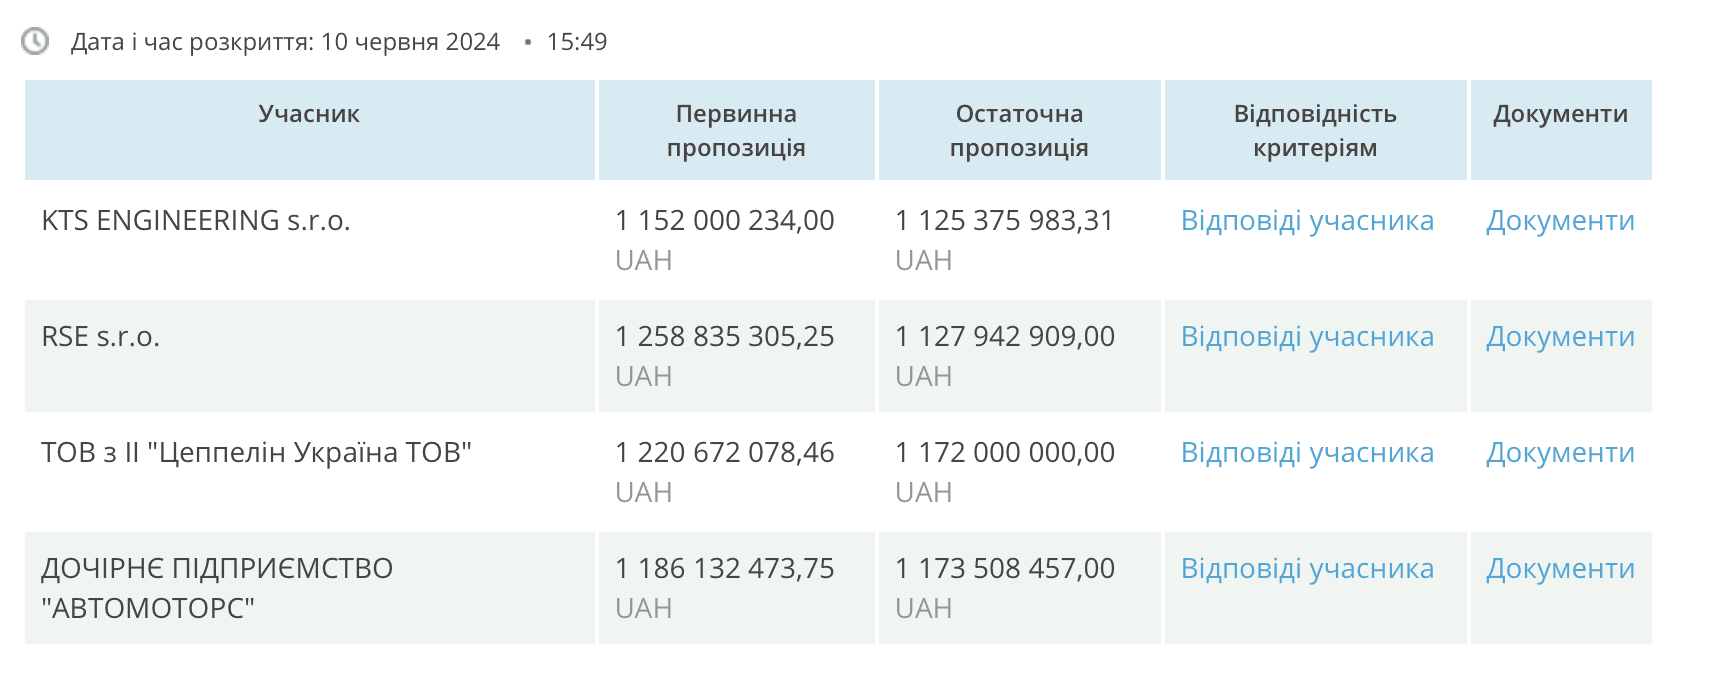 “Київтеплоенерго” закупило 15 австрійських міні-ТЕЦ на рекордні 1,12 млрд гривень